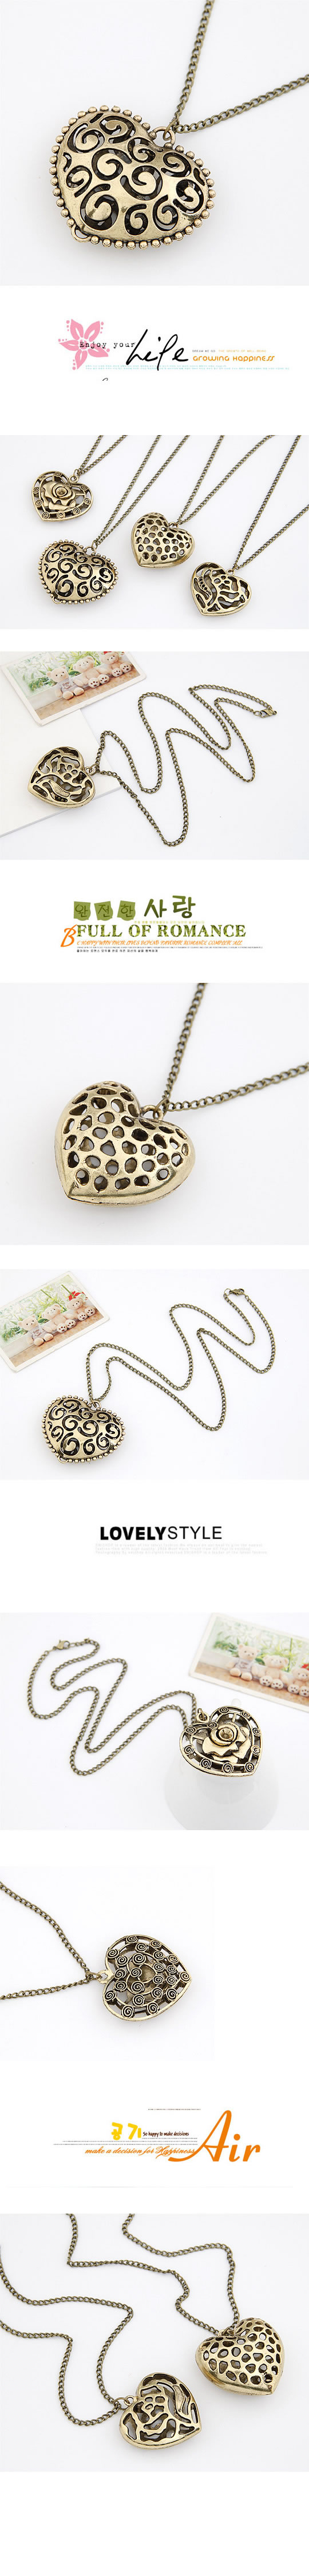 Legal Bronze Hollow Out Heart Pendant Alloy Korean Necklaces,Korean Necklaces